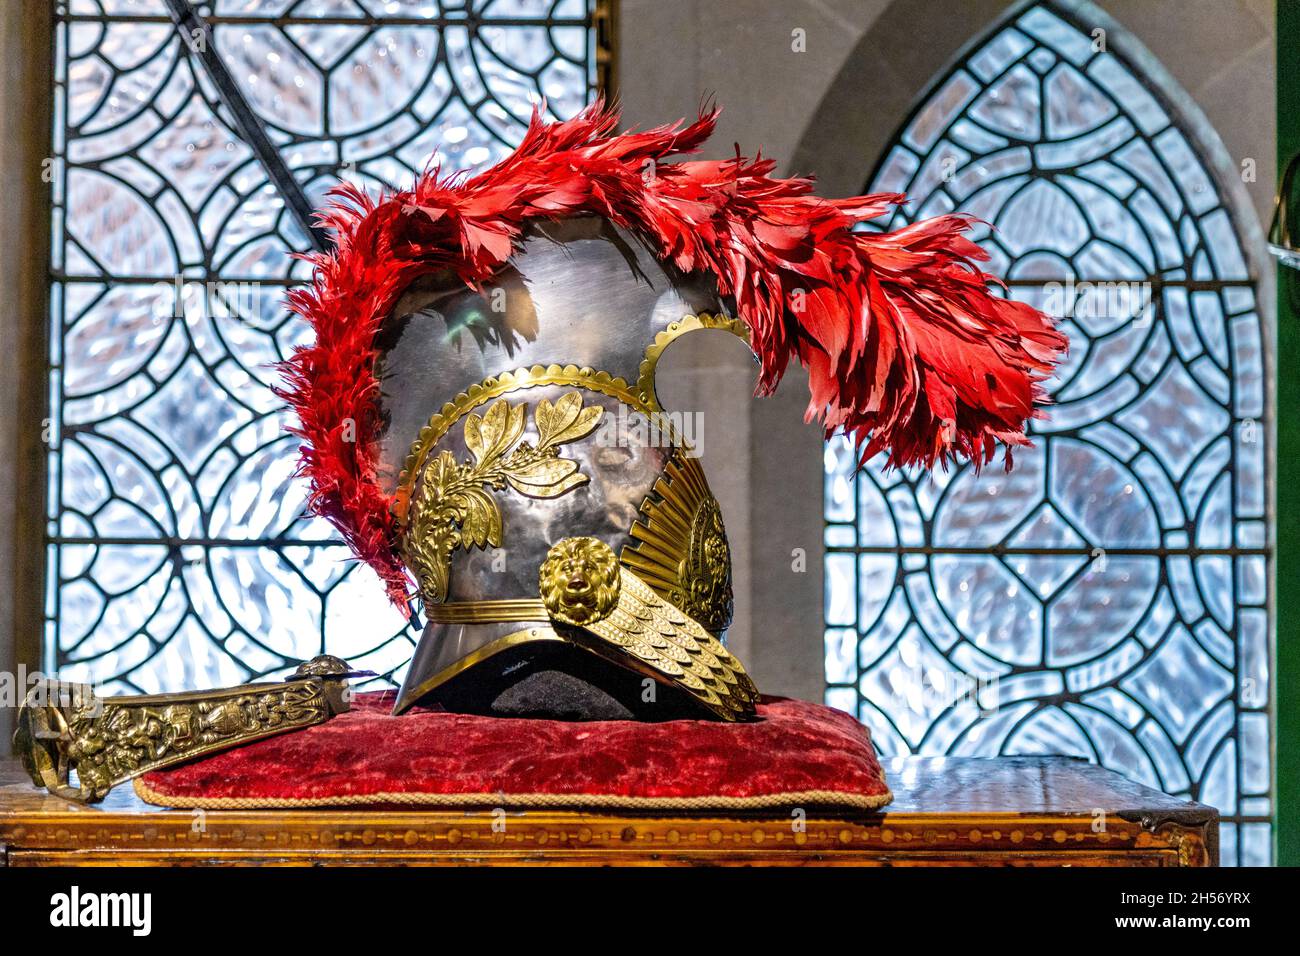 Casque cavalerie médiéval avec ornements dorés et plumes rouges exposé au château d'Arundel, West Sussex, Royaume-Uni Banque D'Images